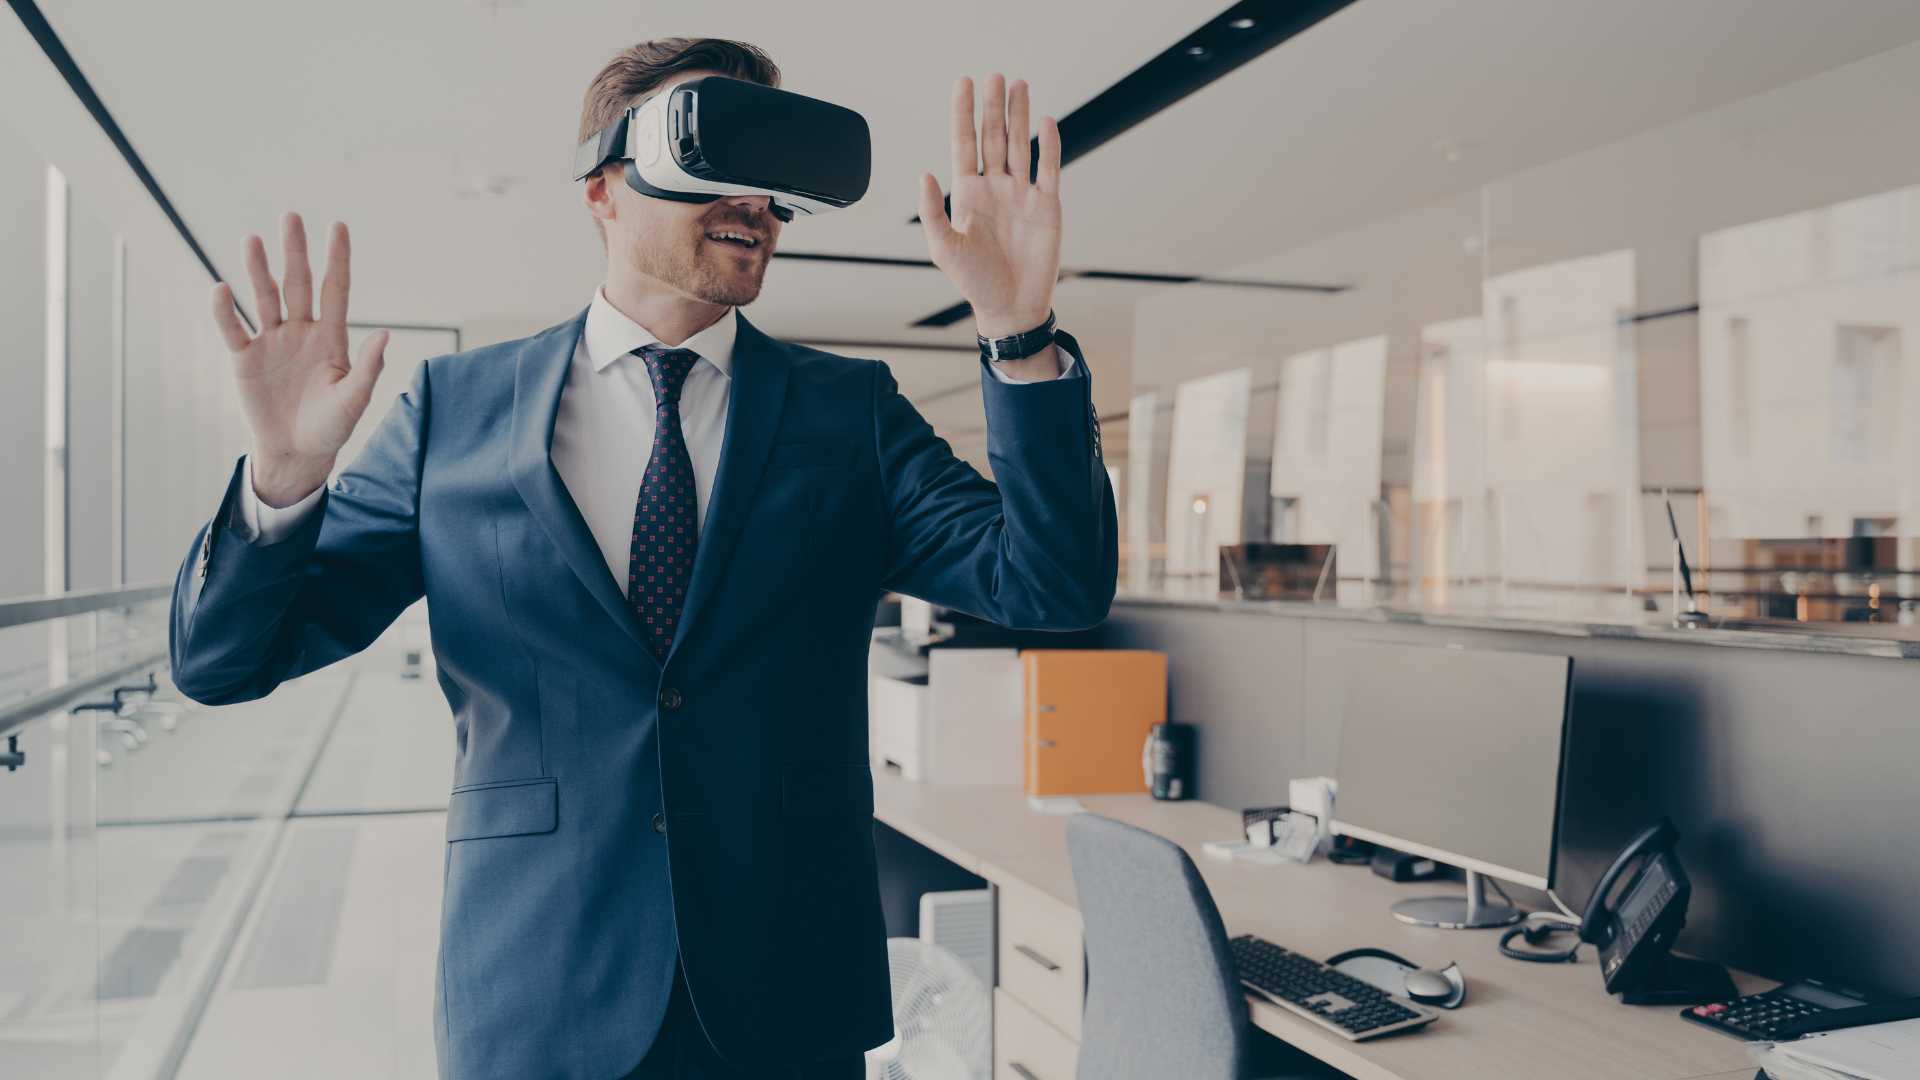 réalité virtuel au travail